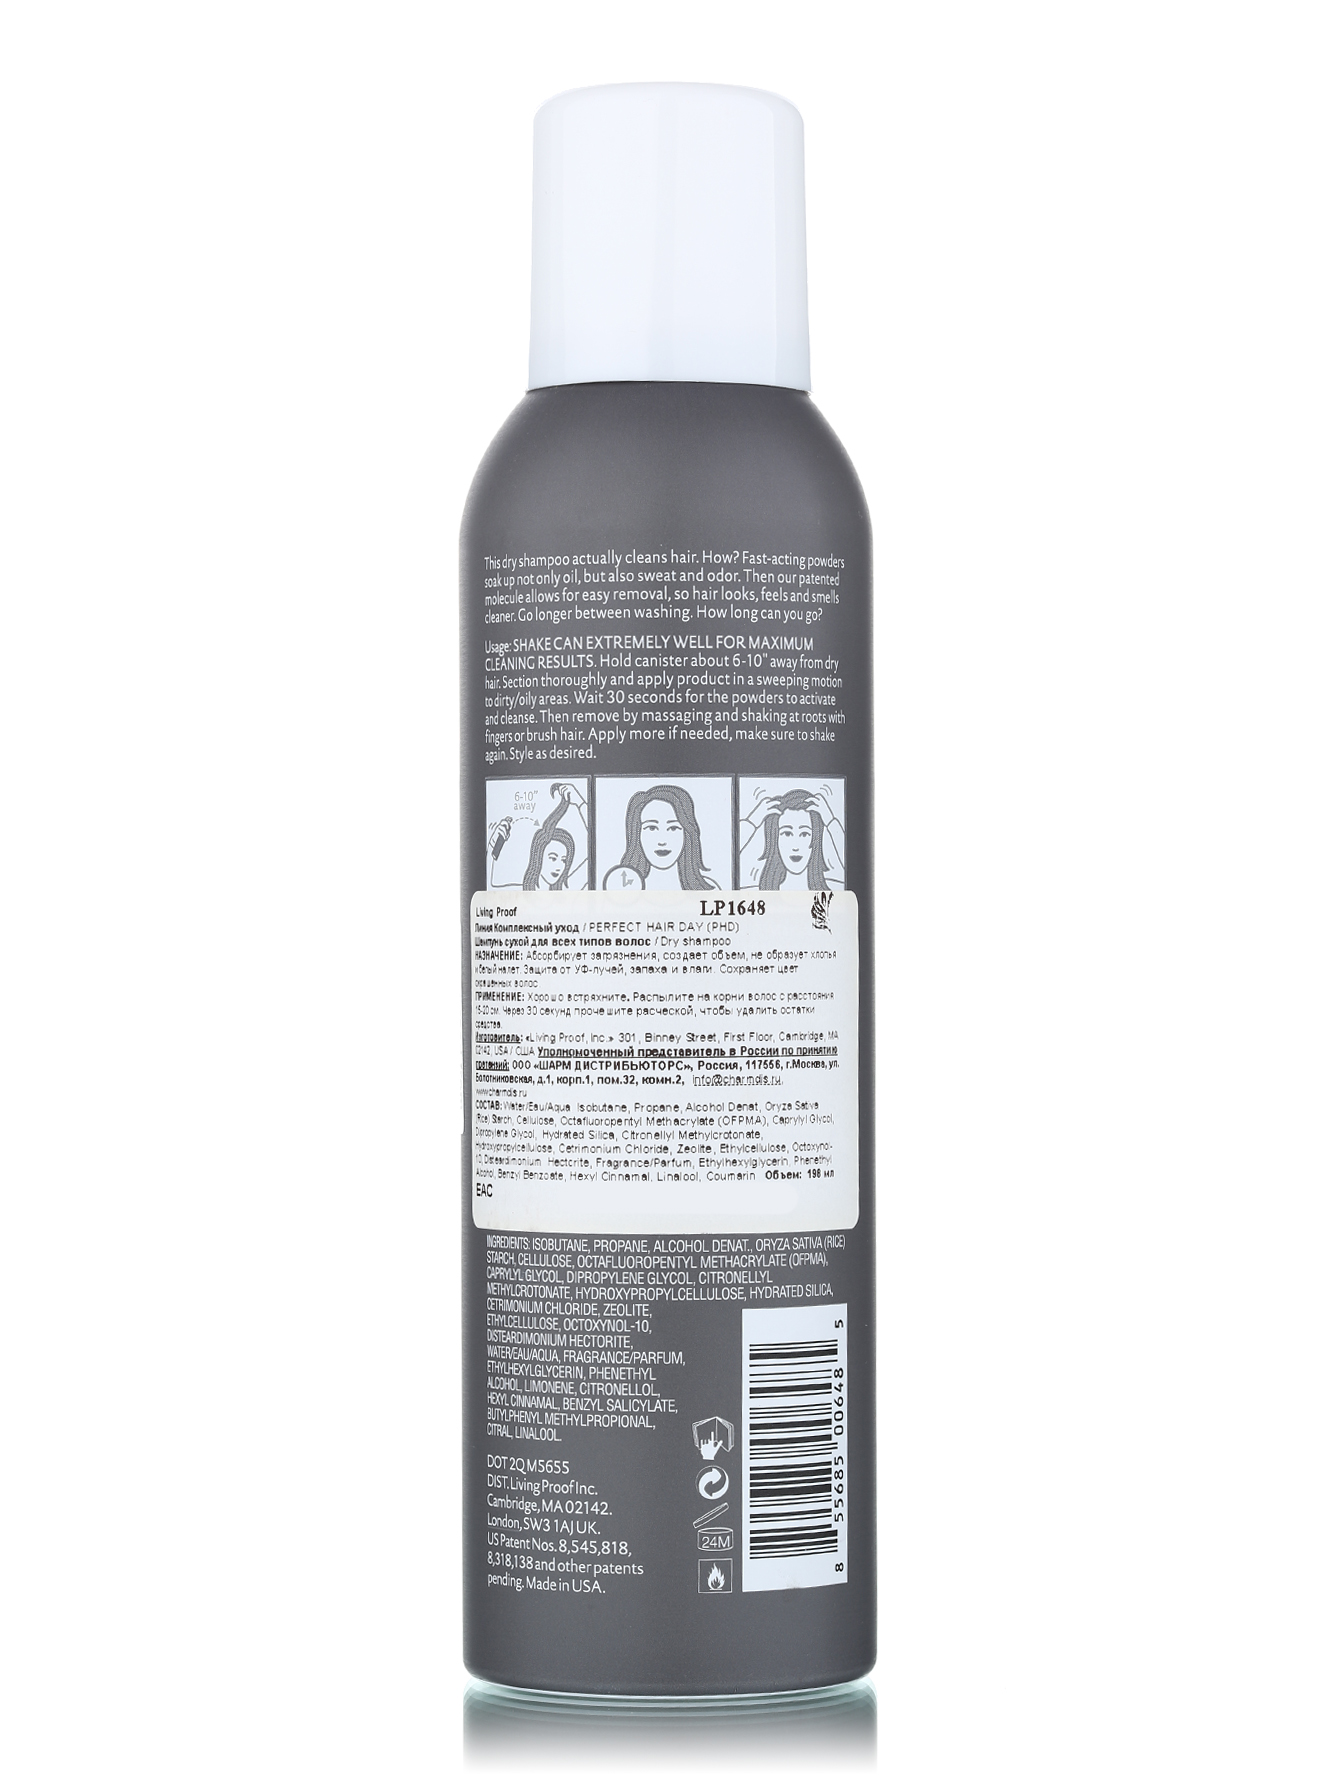  Шампунь сухой для всех типов волос - Hair Care, 198ml - Обтравка1